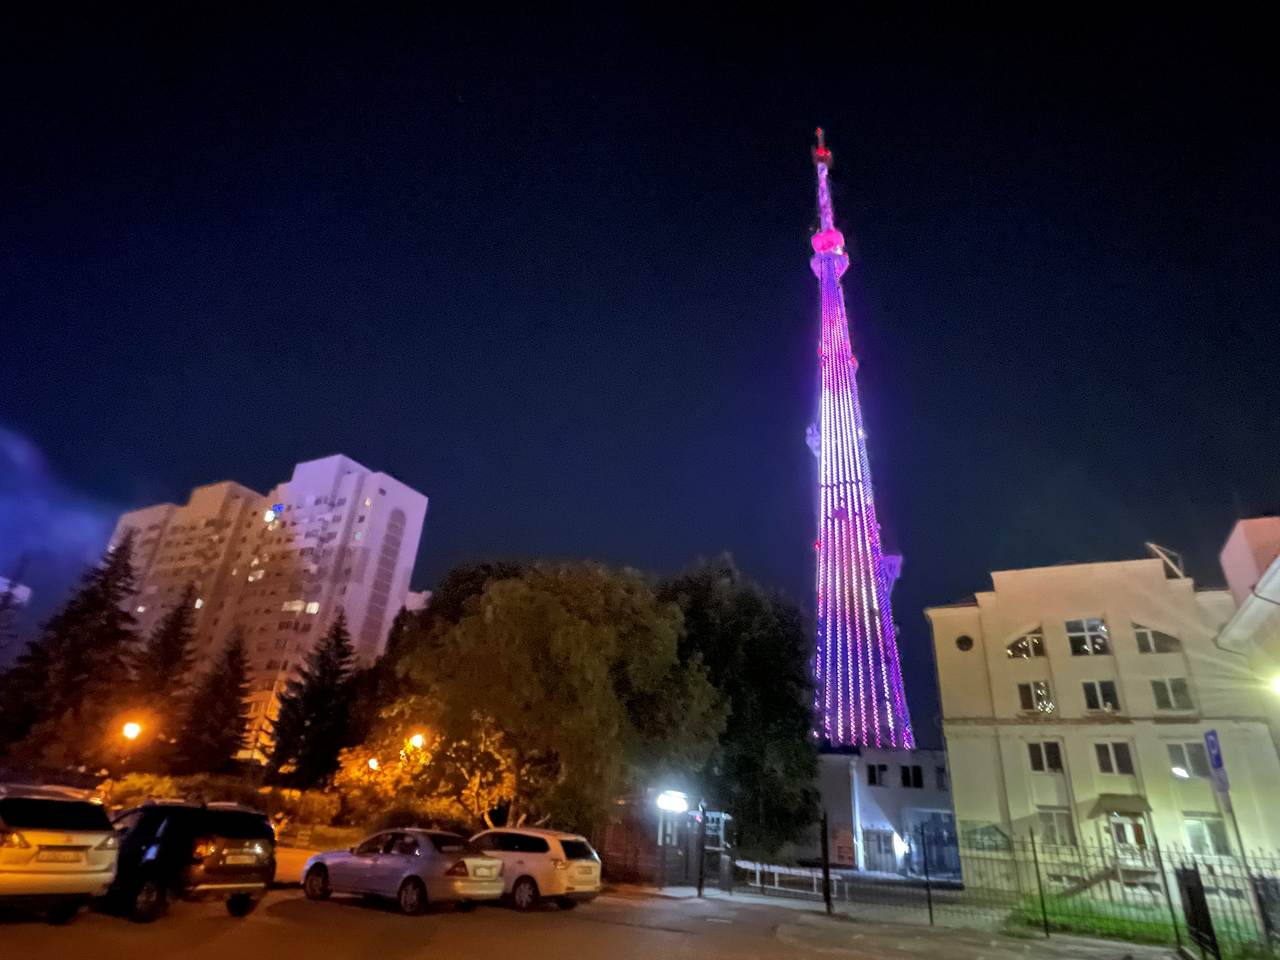 В честь Дня единения народов Беларуси и России воронежскую телебашню украсит праздничная подсветка